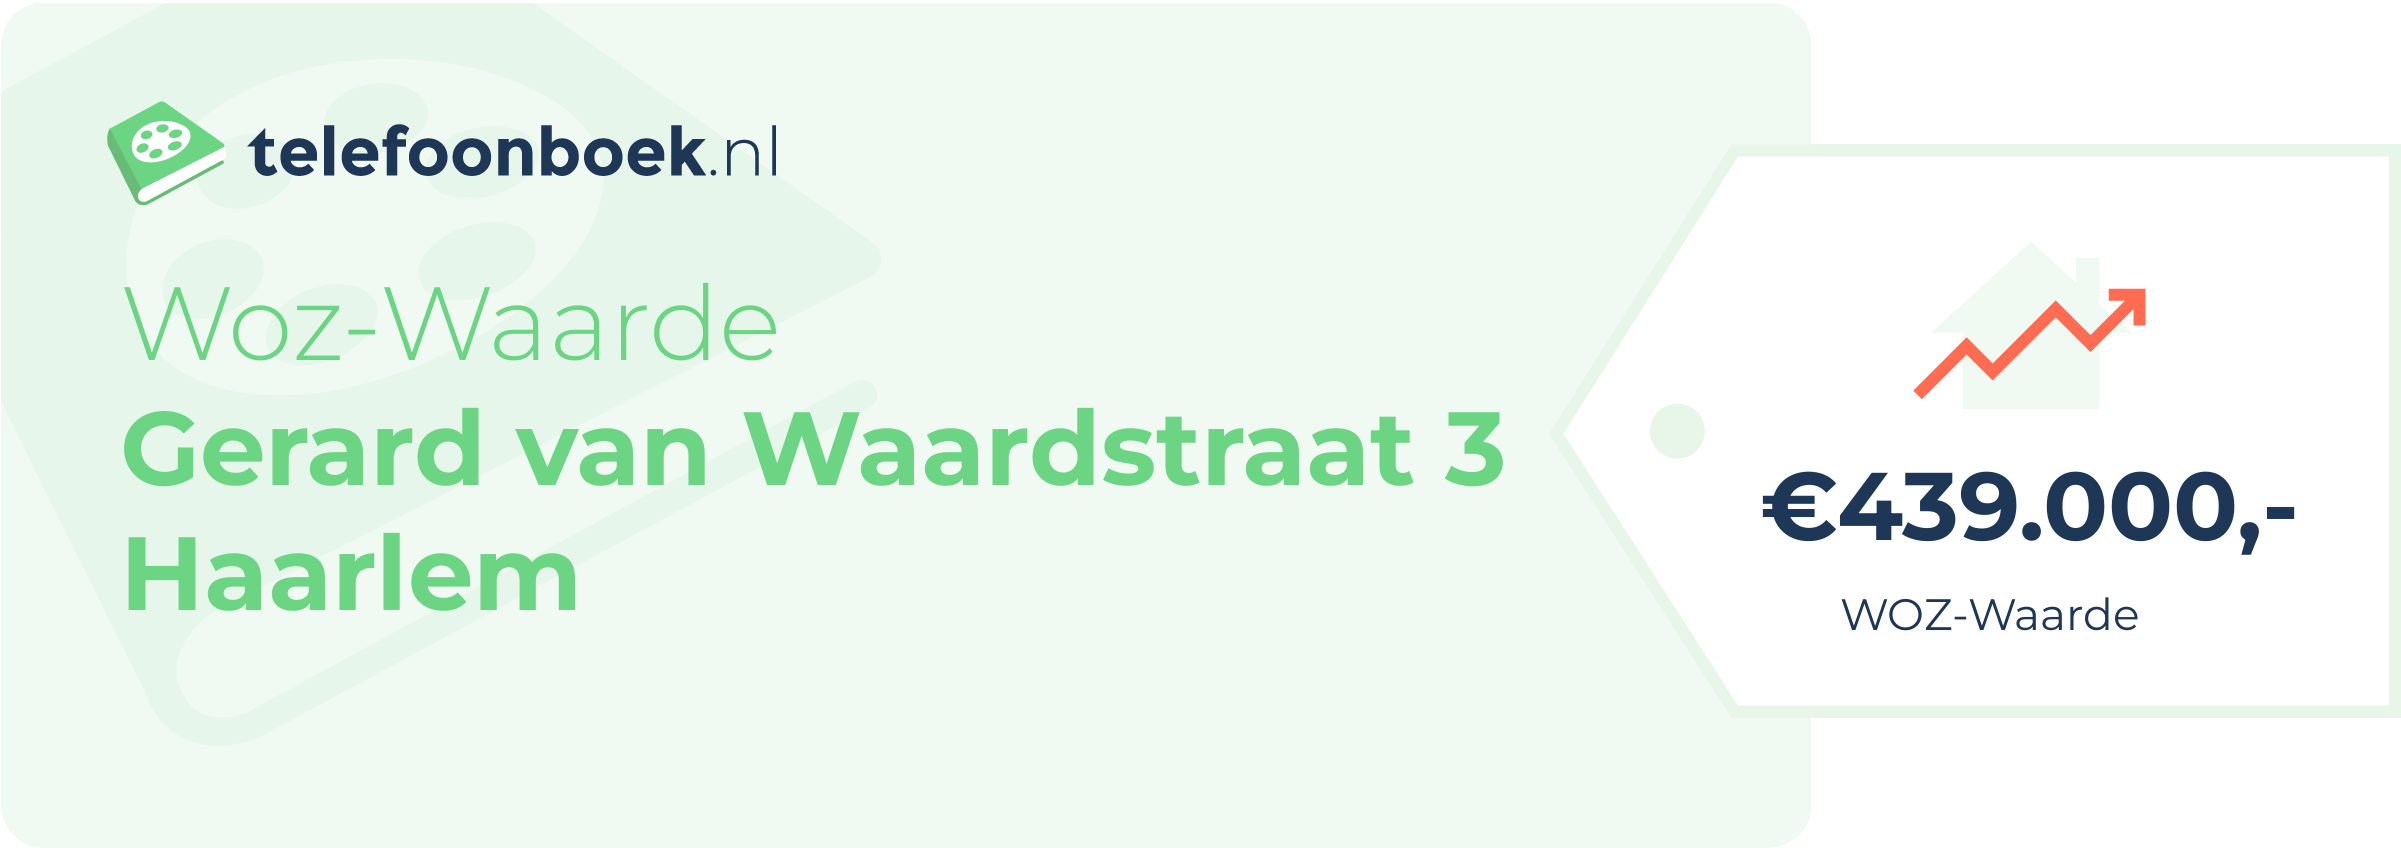 WOZ-waarde Gerard Van Waardstraat 3 Haarlem